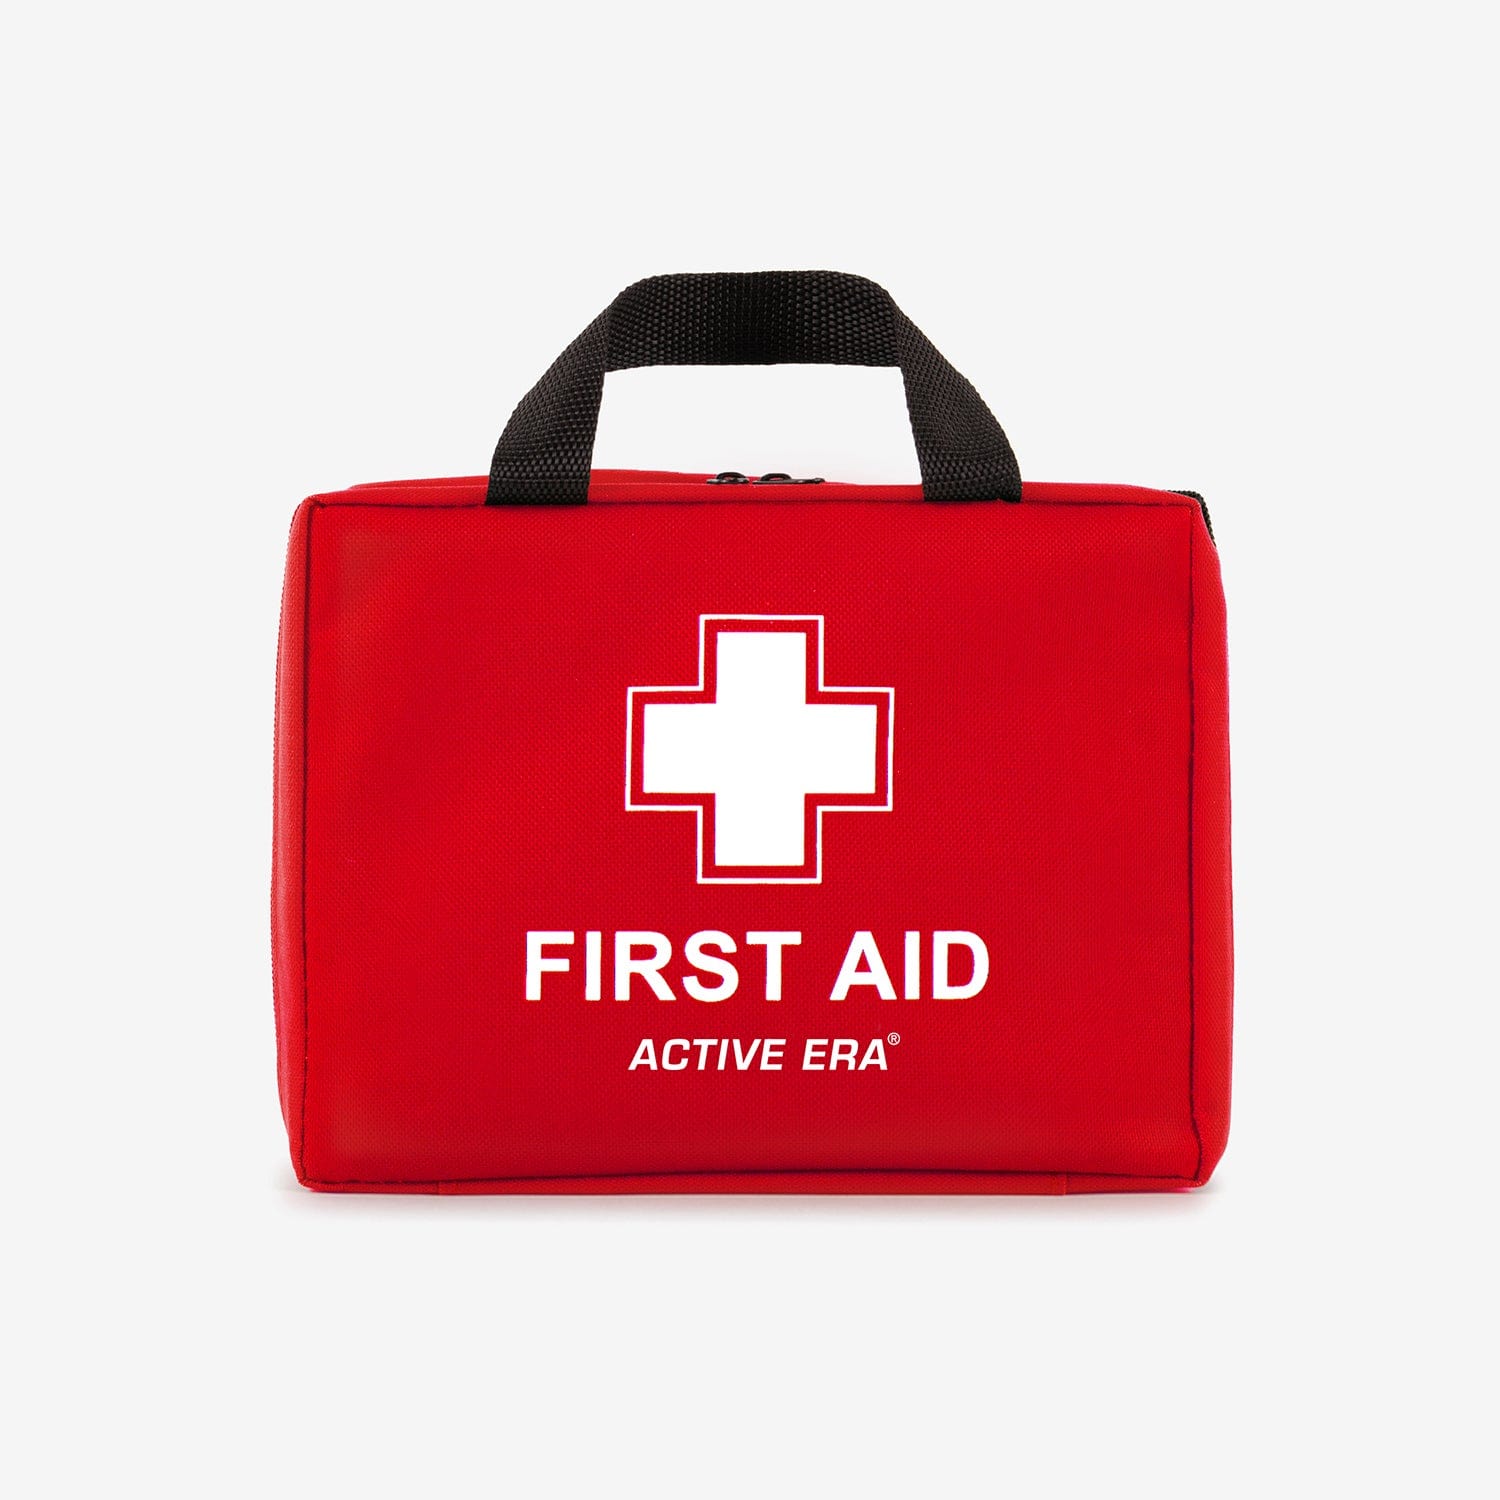 90-teilige Premium-Erste-Hilfe-Set-Tasche – Rot